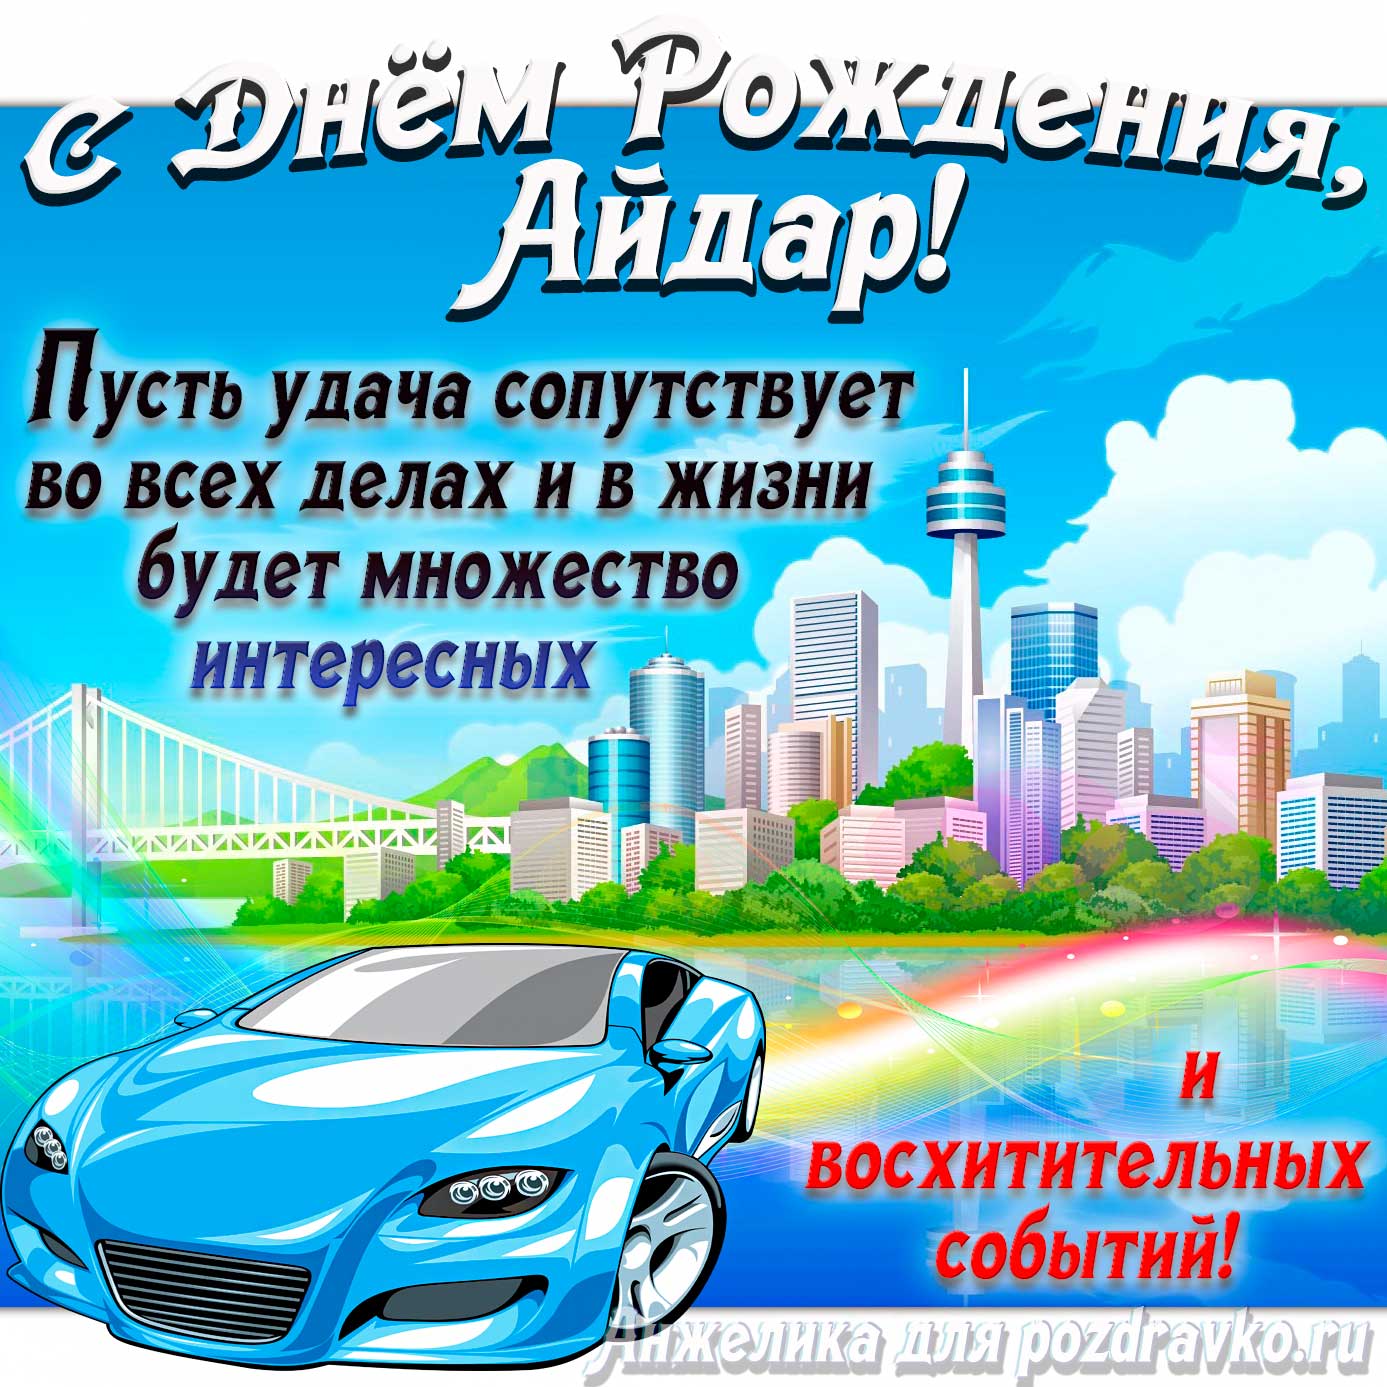 Картинка с Днём Рождения Айдар с голубой машиной и пожеланием — скачать бесплатно